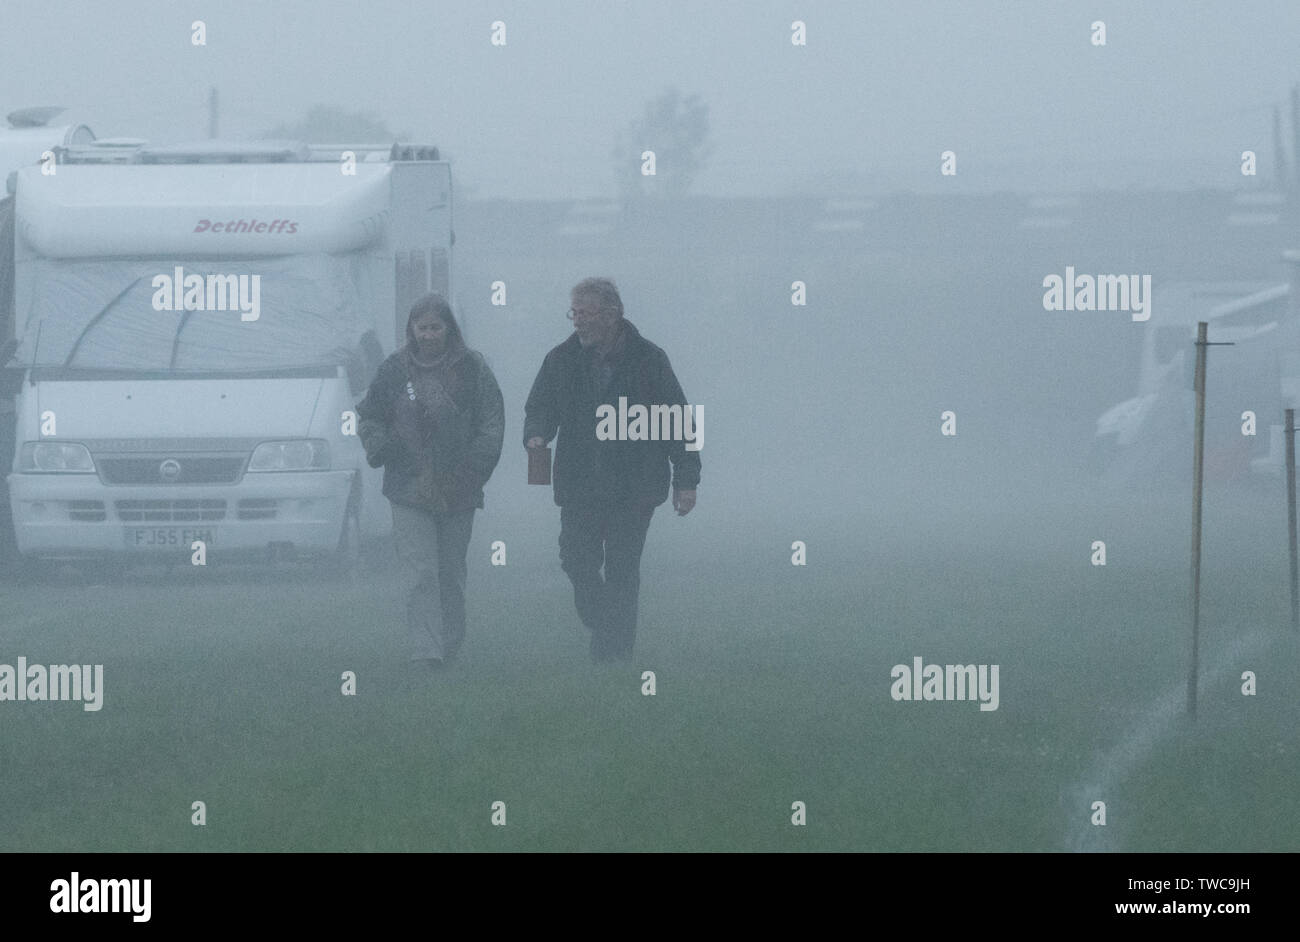 Später am Abend Nebel steigt auf ein Reisemobil und cavavan Website. Stockfoto